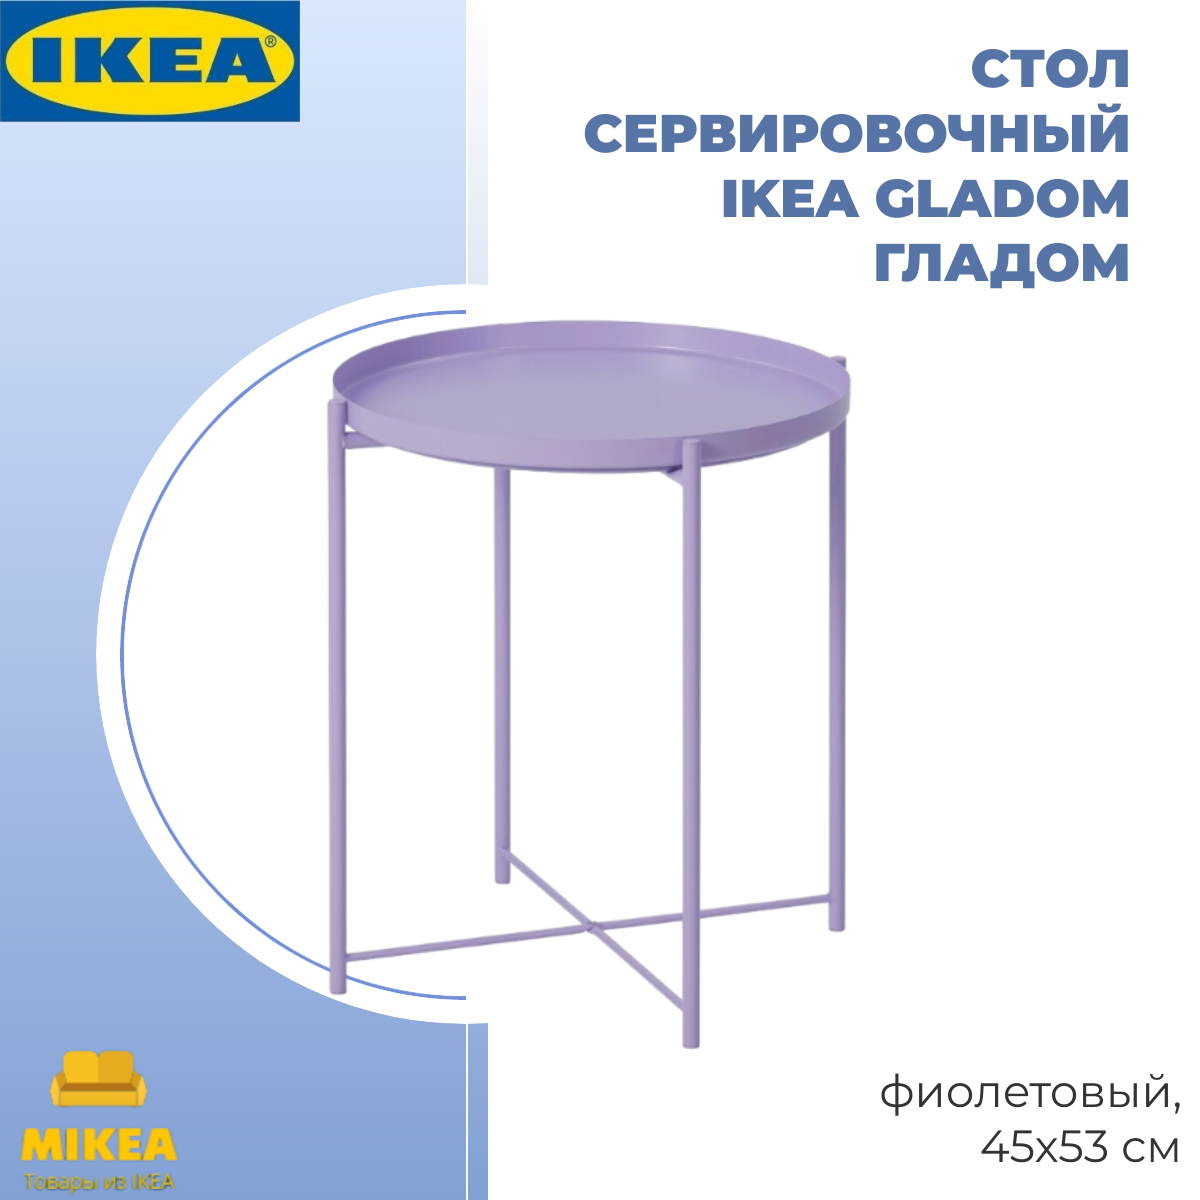 Стол сервировочный, фиолетовый, 45х53 СМ IKEA GLADOM гладом